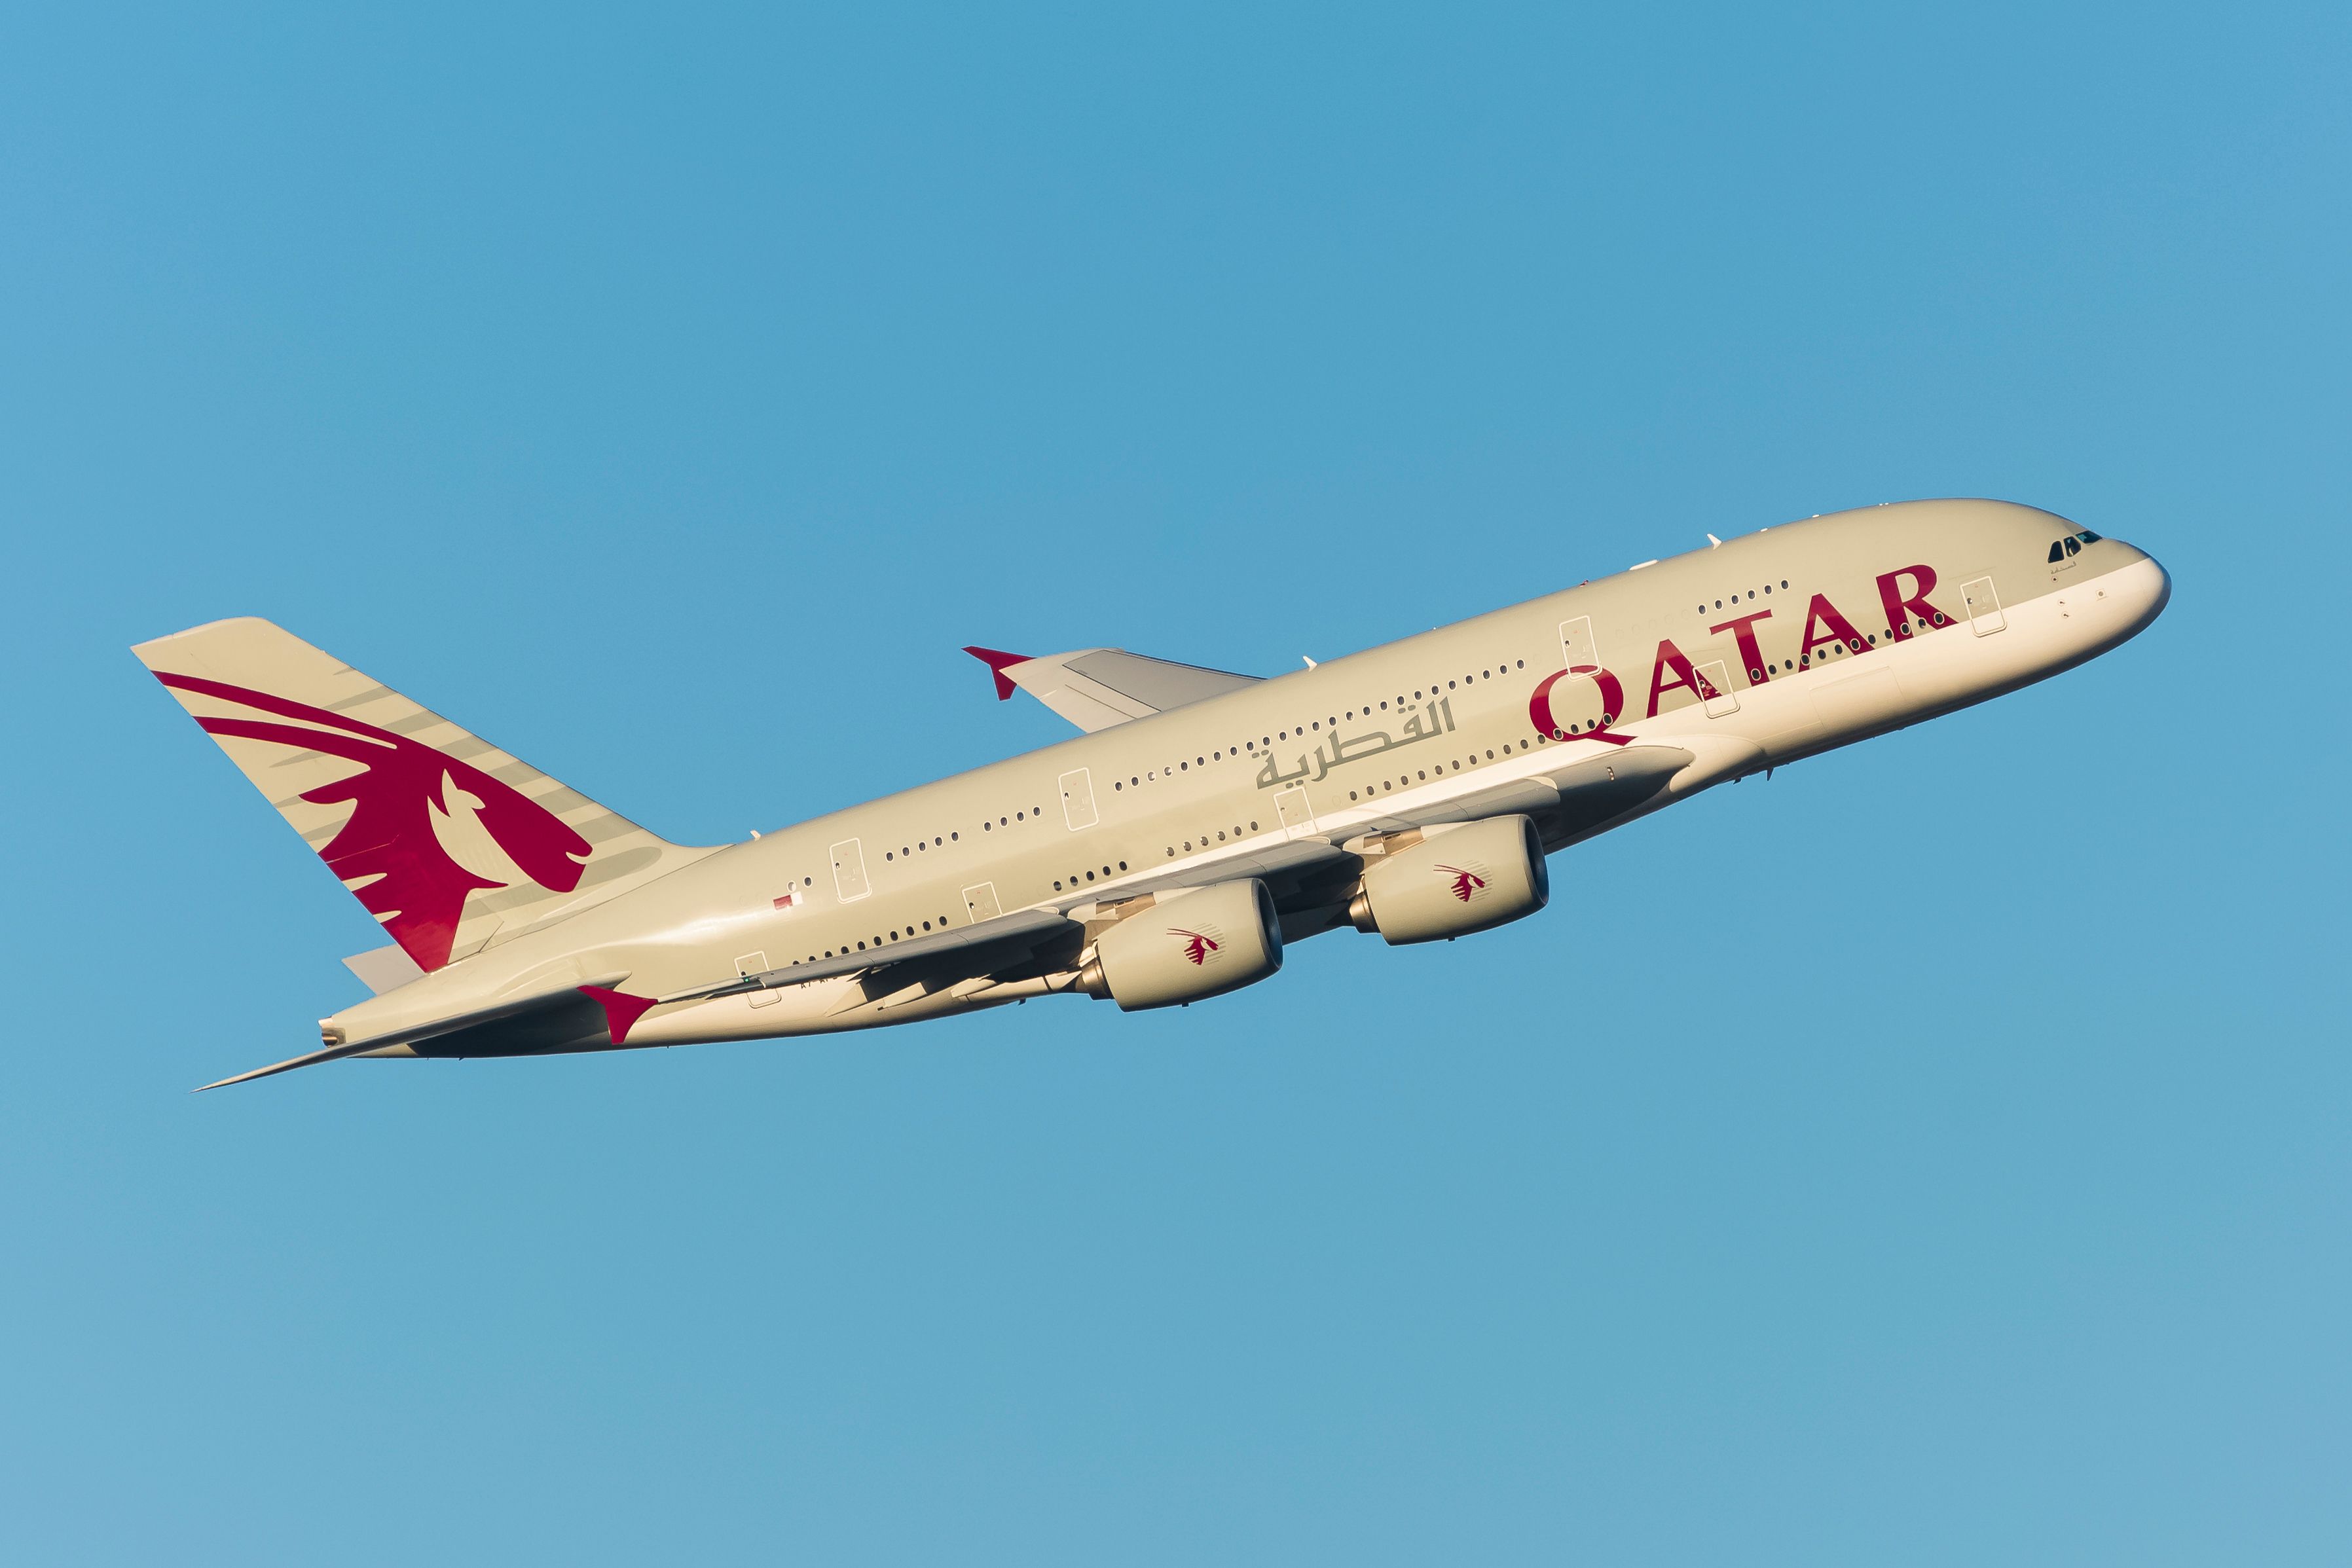 A Qatar Airways Airbus A380